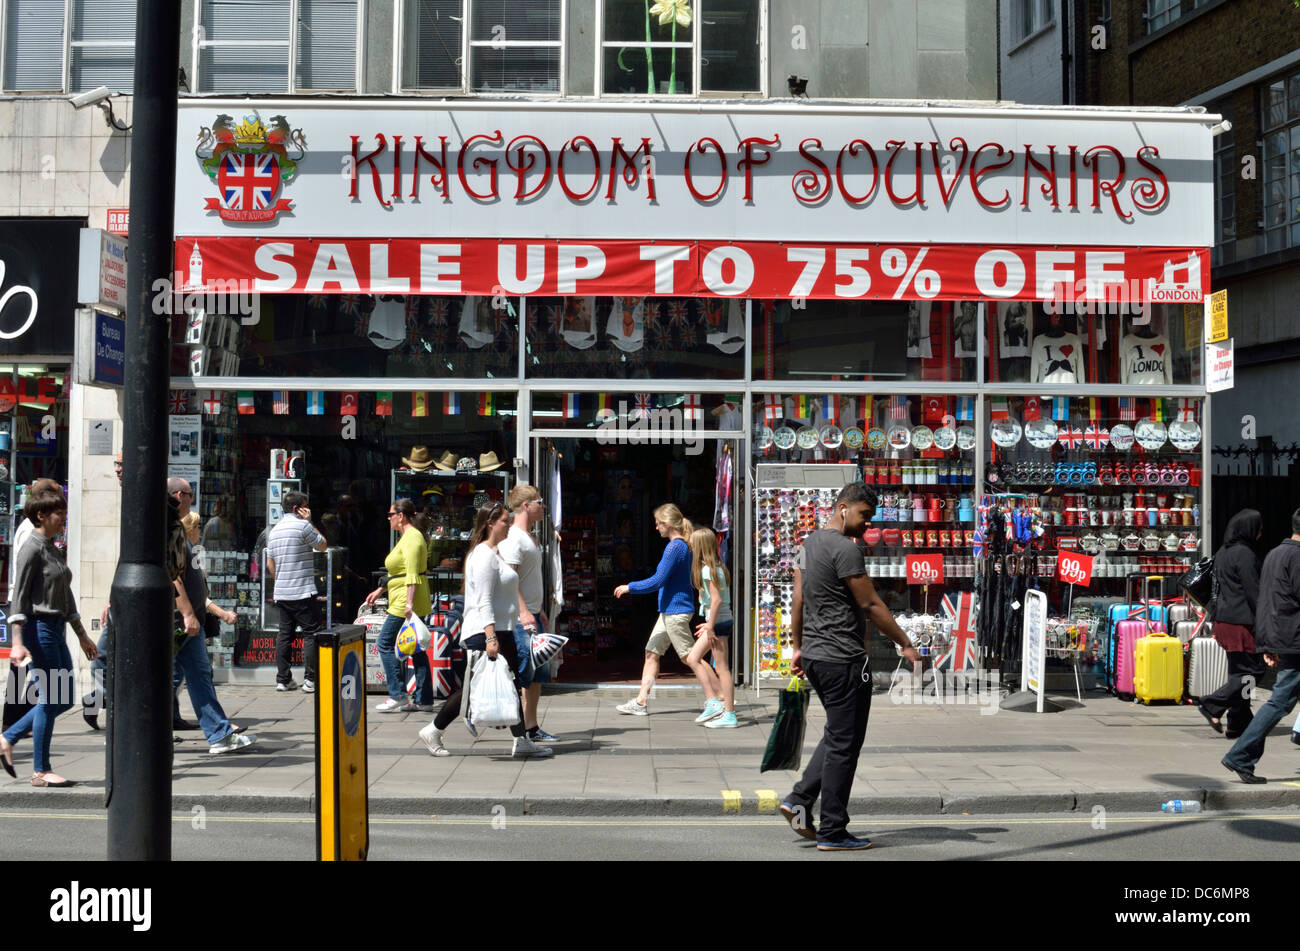 Regno del negozio di souvenir Oxford Street tourist souvenir shop, London, Regno Unito Foto Stock